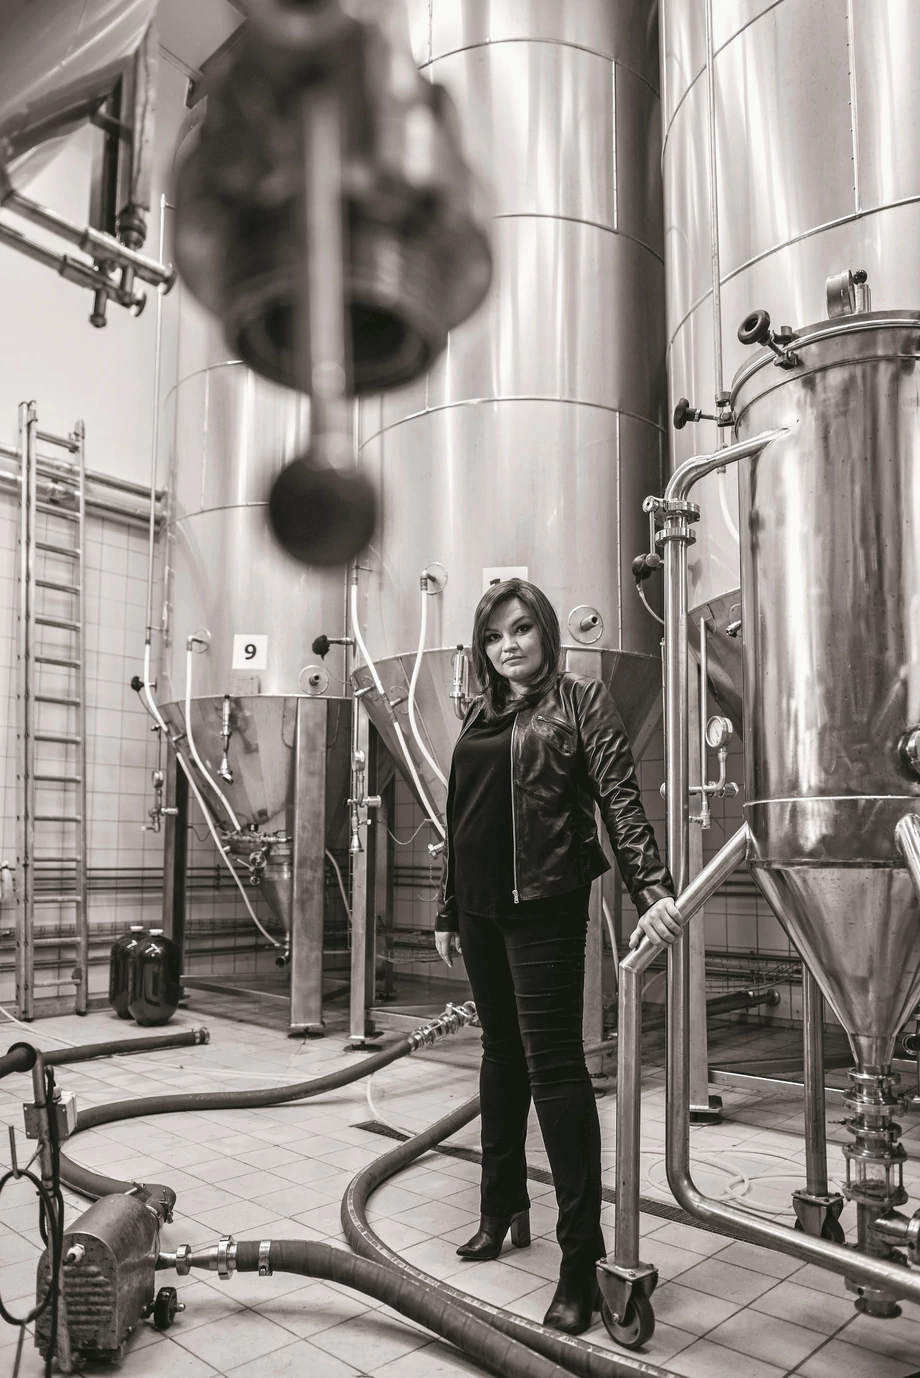 Dominika Diller uruchomiła browar Hoplala w 2016 roku z myślą, by tworzyć delikatniejsze piwa dla kobiet. W niemal pięć lat po jej odejściu ten piwny biznes funkcjonuje w tej samej kobiecej formule  